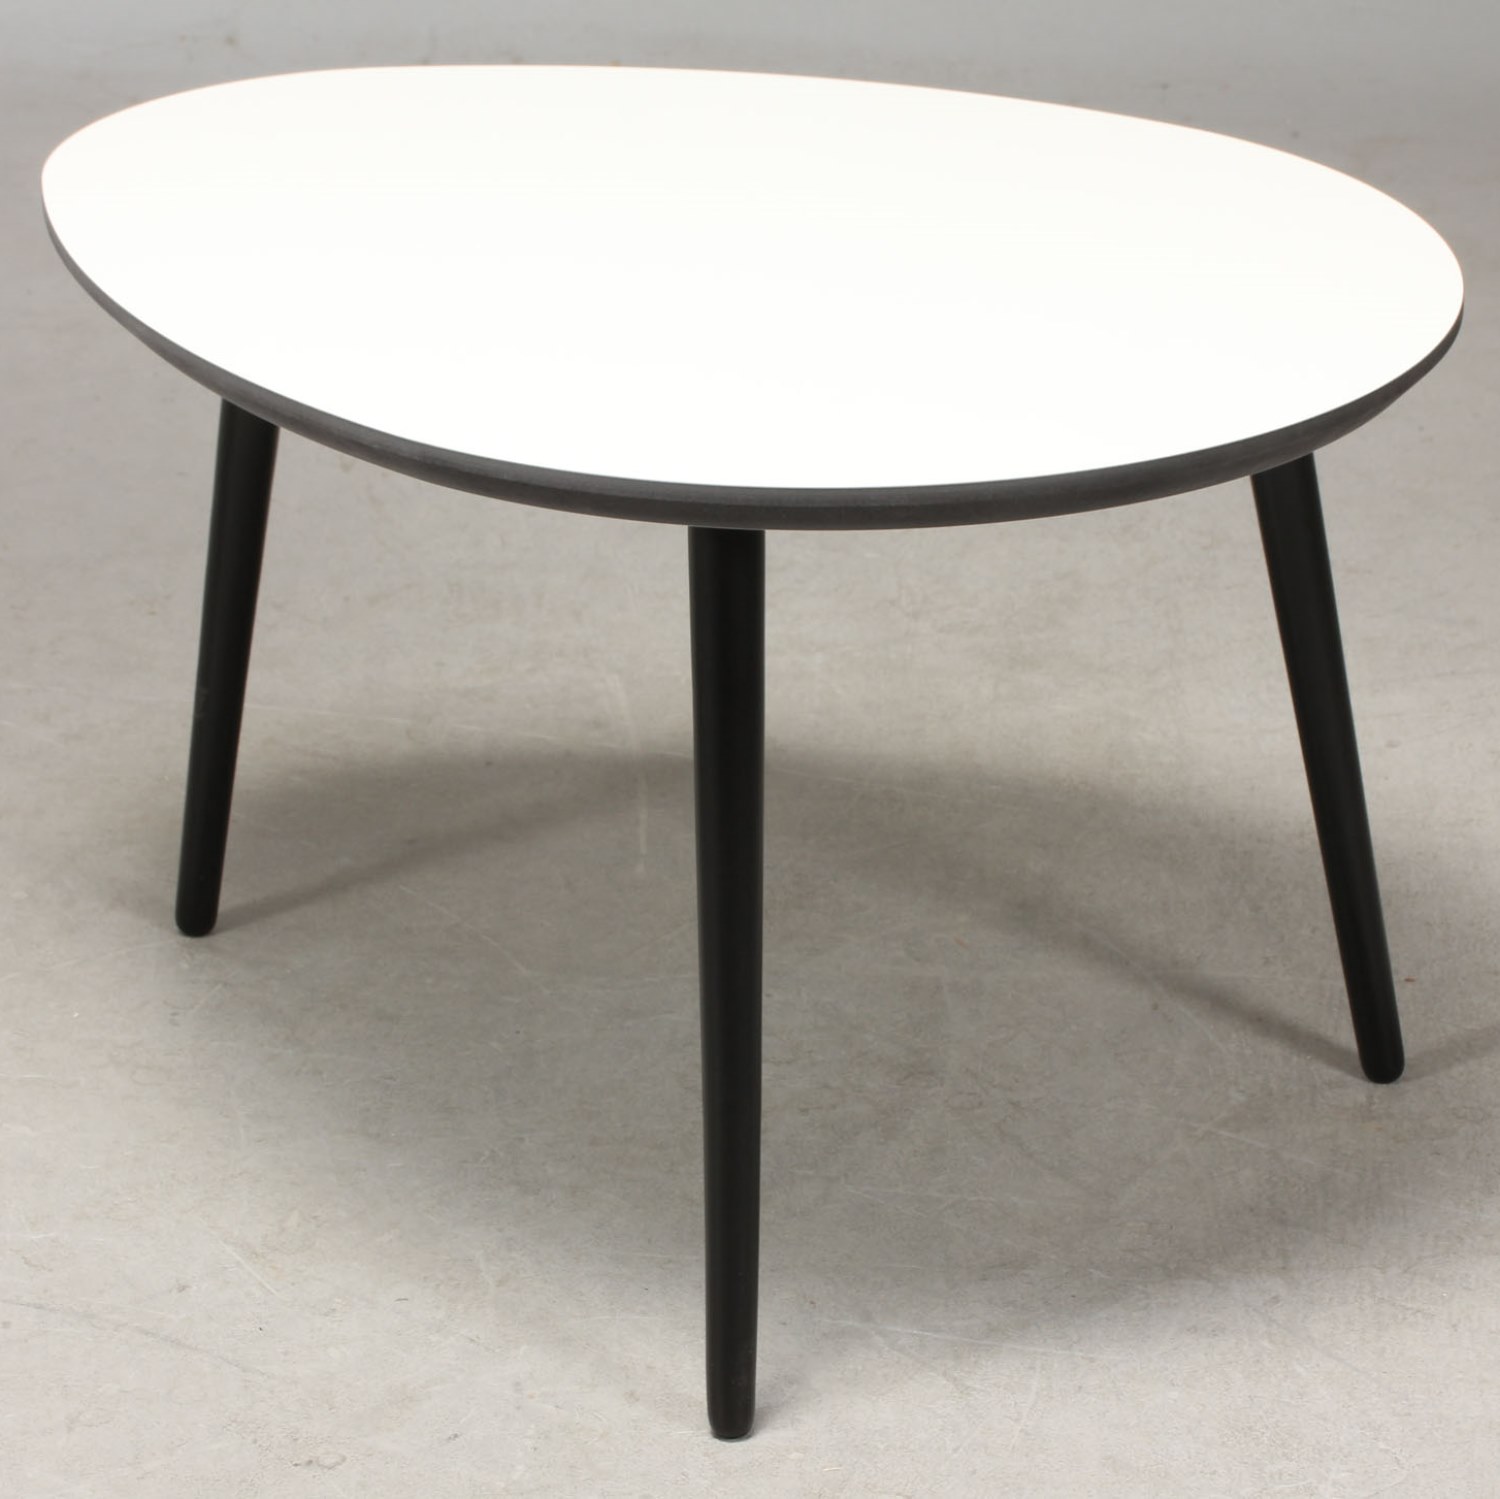 CT 20 - dråbeformet sofabord i hvid laminat med sorte træben, 3 størrelser. 89 x 66 cm Højde 40 cm